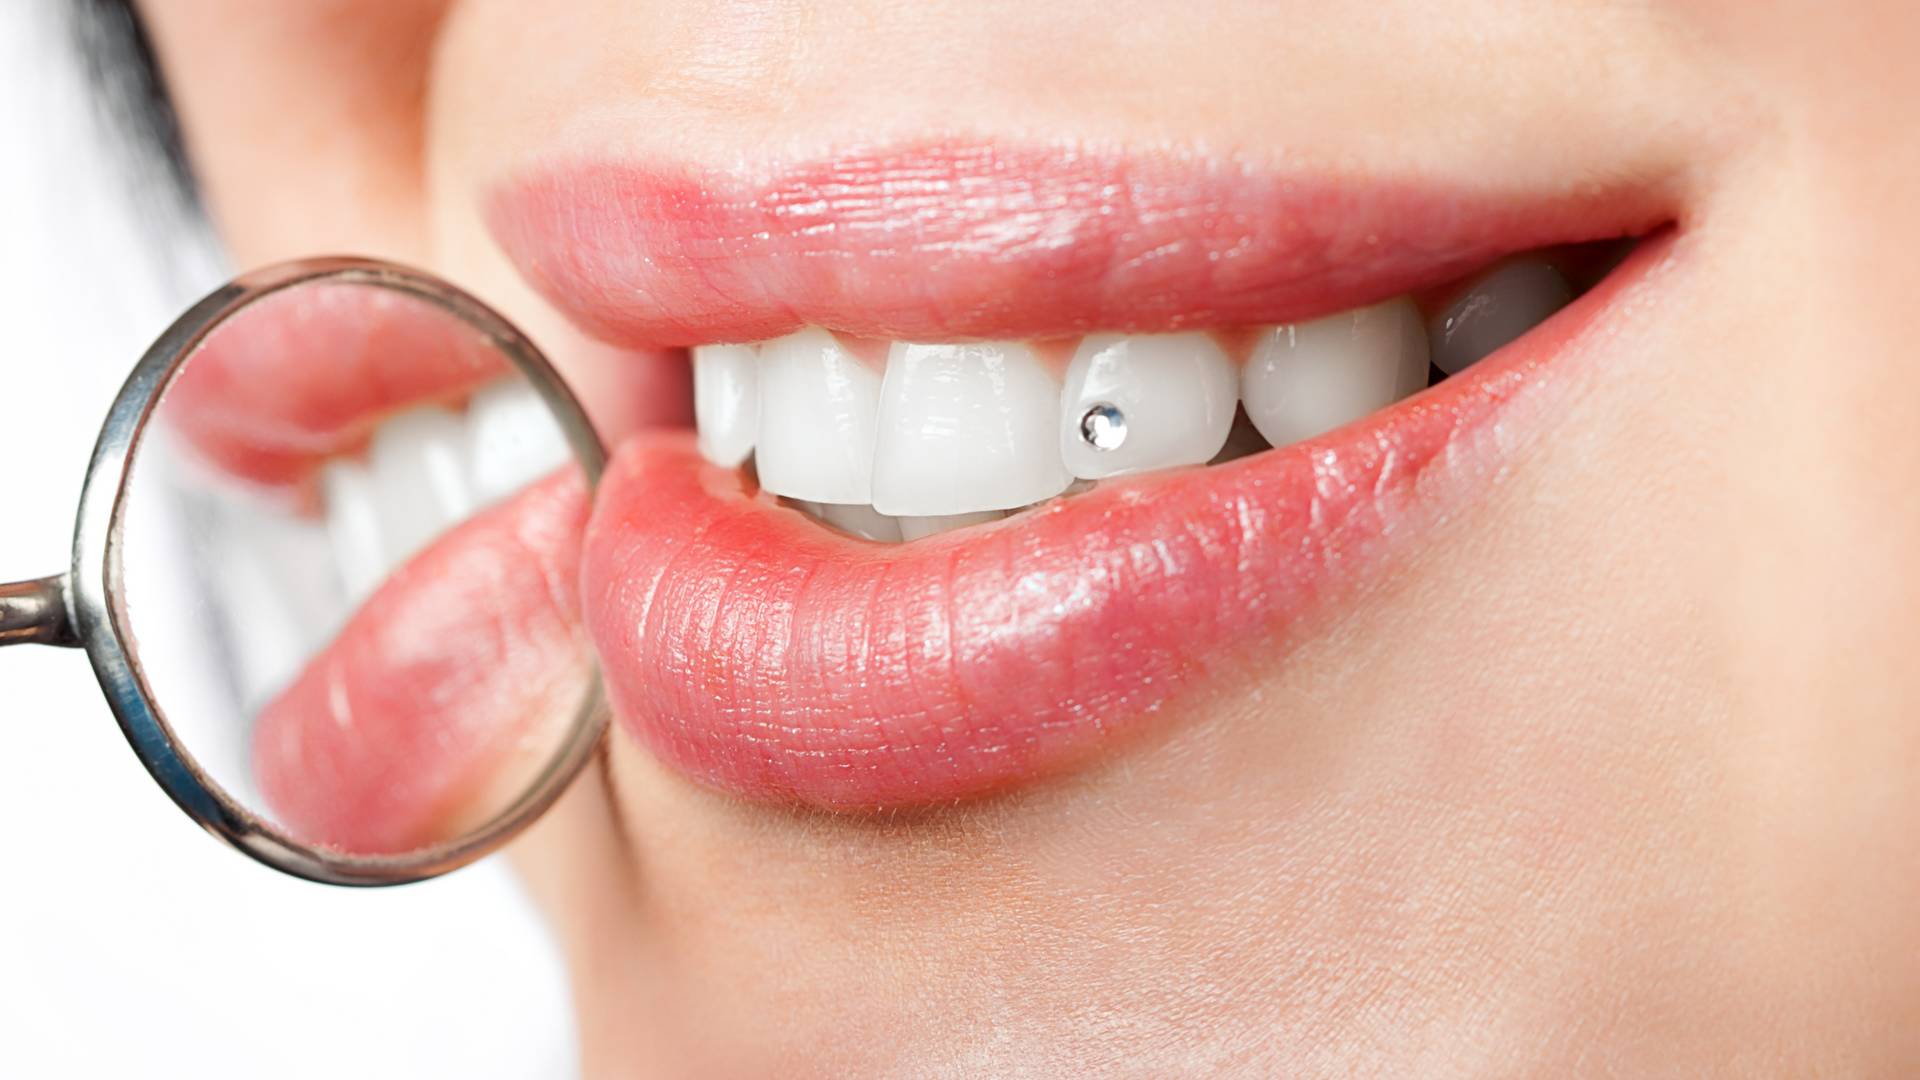 Tooth gems, czyli kryształki na zęby. Ten urodowy trend stał się hitem